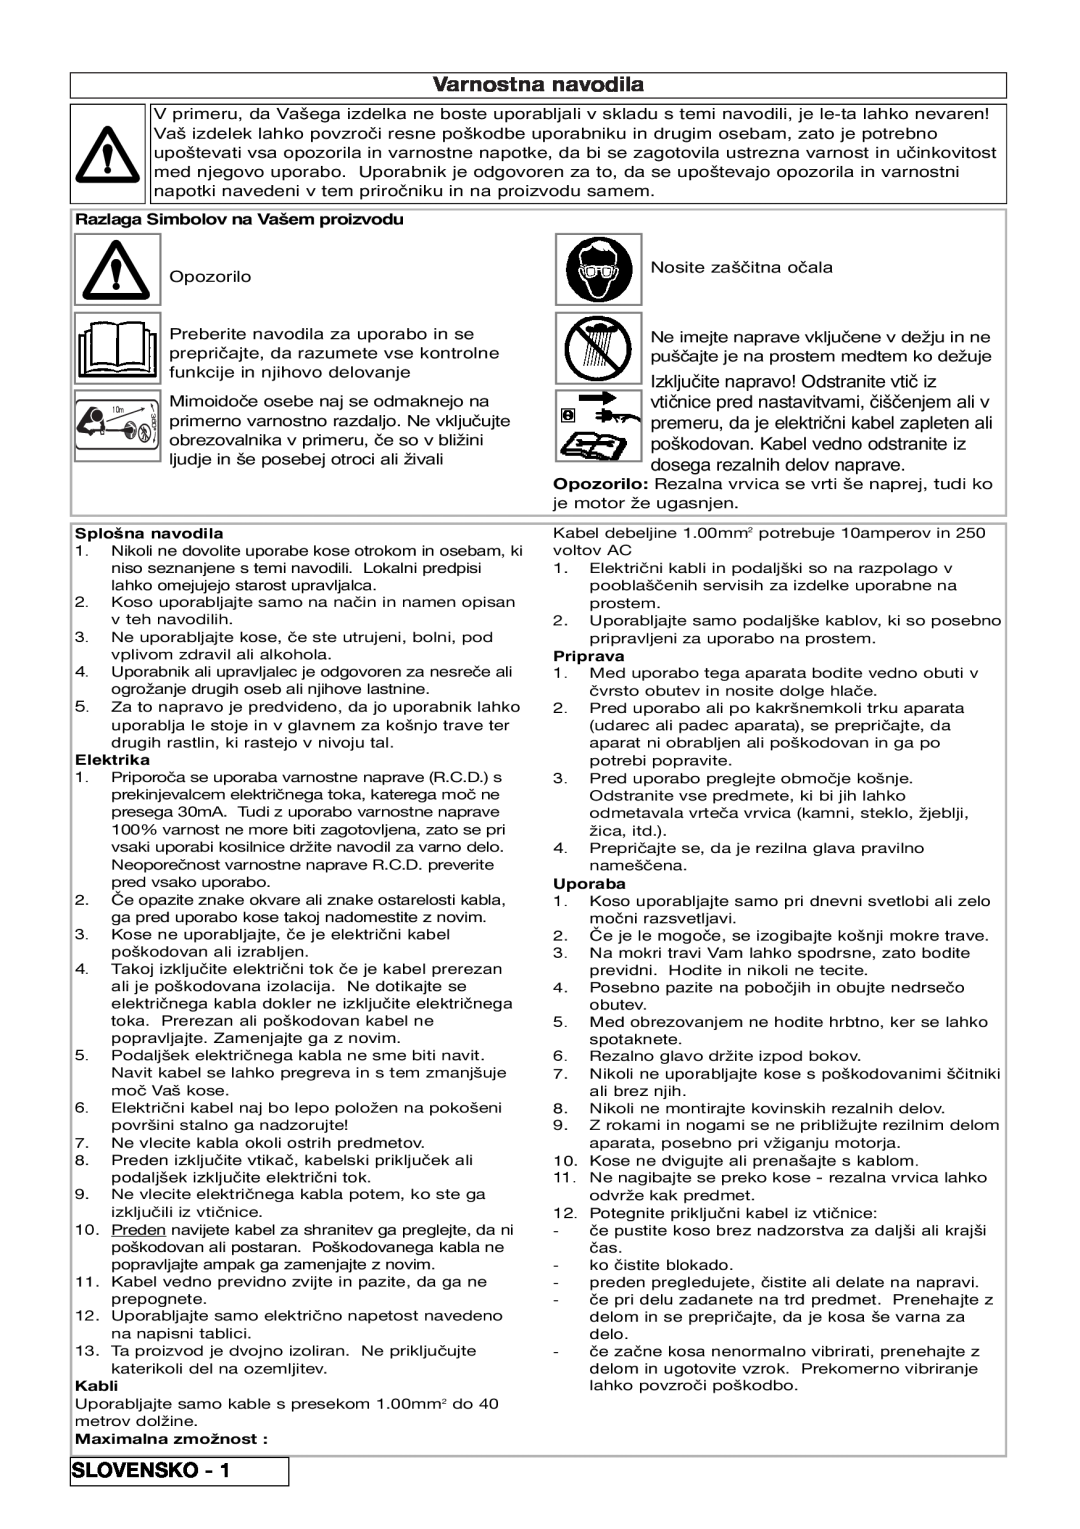 Flymo 800/1000 manual Varnostna navodila, Slovensko, Razlaga Simbolov na Vašem proizvodu 